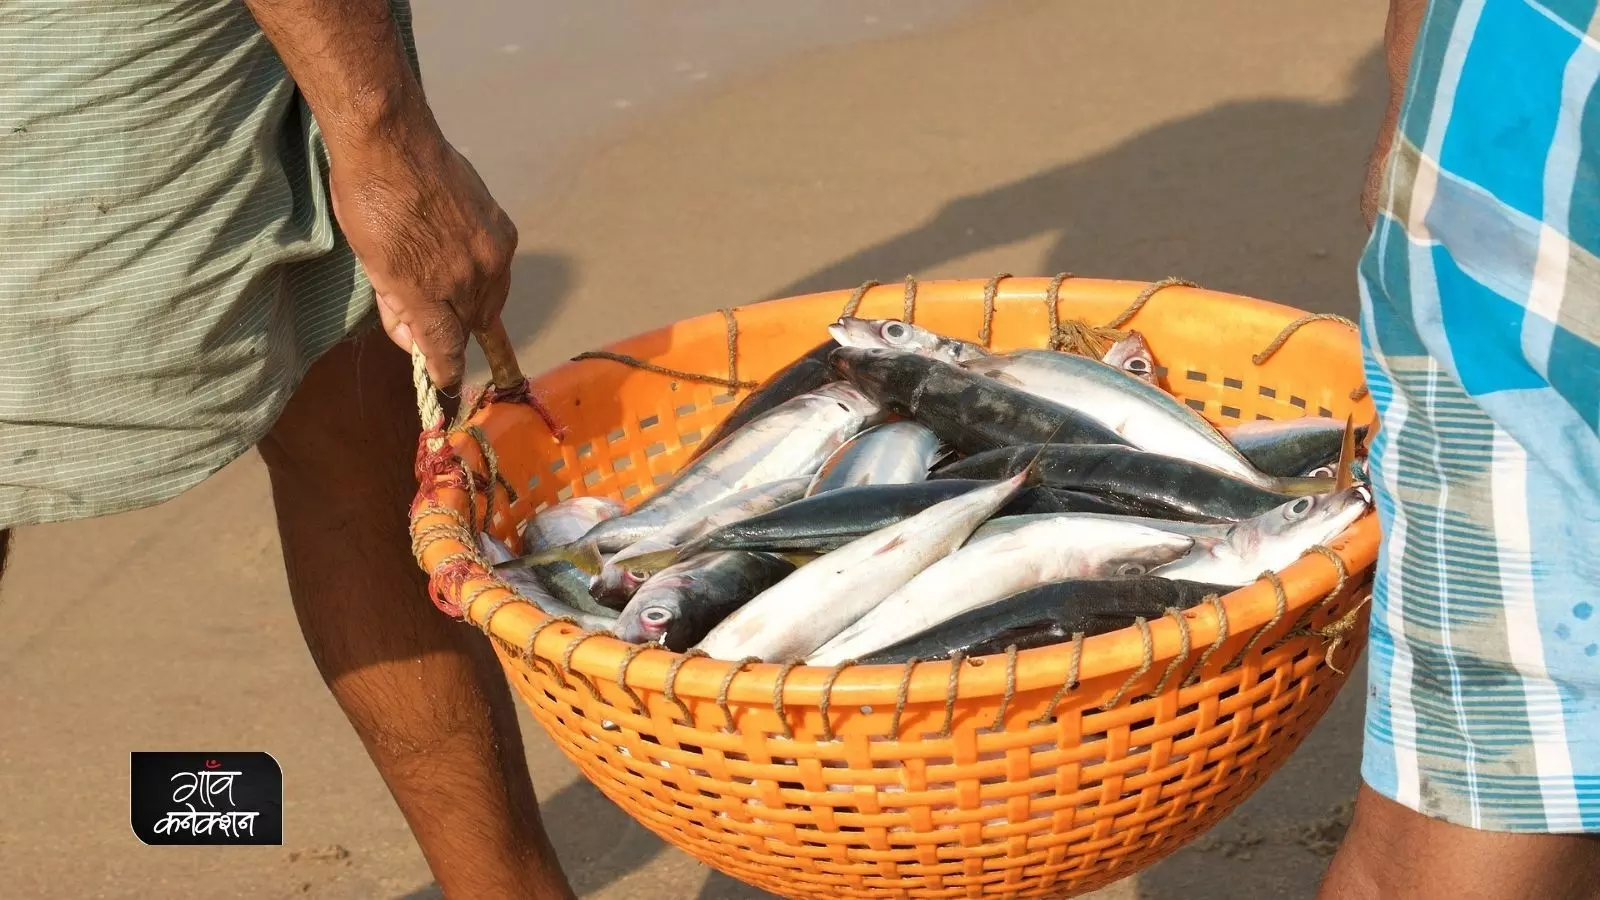 फिशरीज स्टार्टअप ग्रैंड चैलेंज: मछली पालन और उससे संबंधित व्यवसाय से जुड़े लोग कर सकते हैं आवेदन